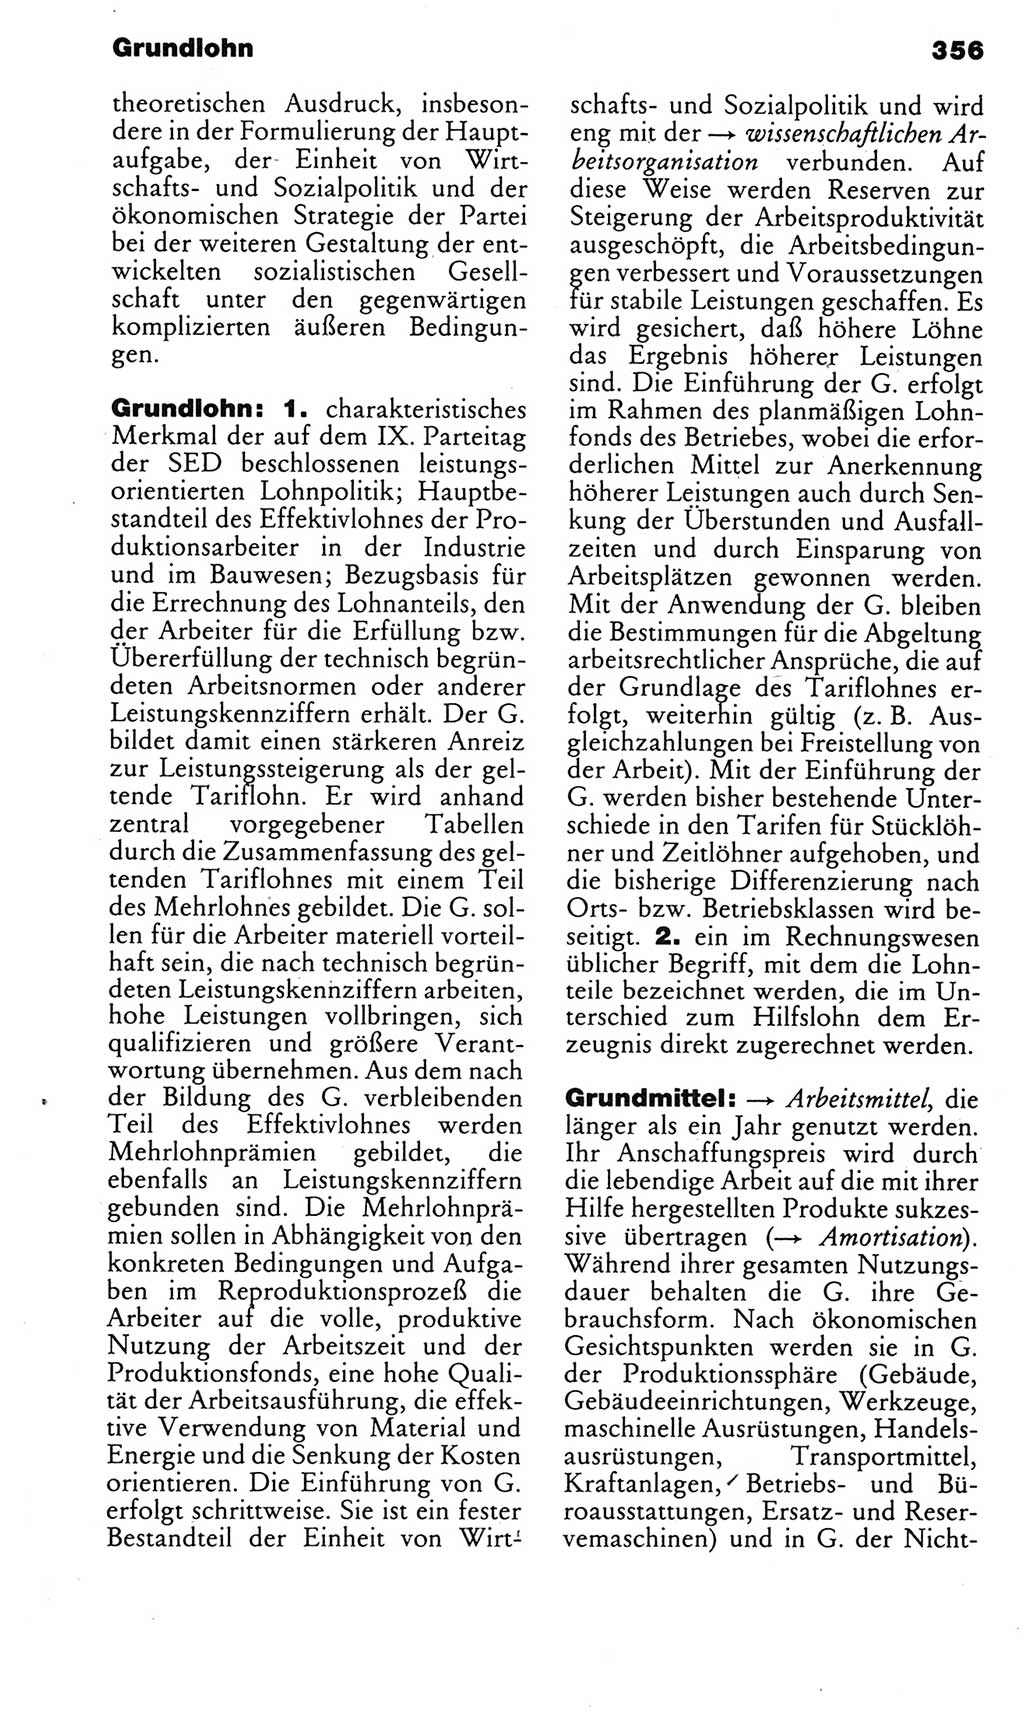 Kleines politisches Wörterbuch [Deutsche Demokratische Republik (DDR)] 1985, Seite 356 (Kl. pol. Wb. DDR 1985, S. 356)